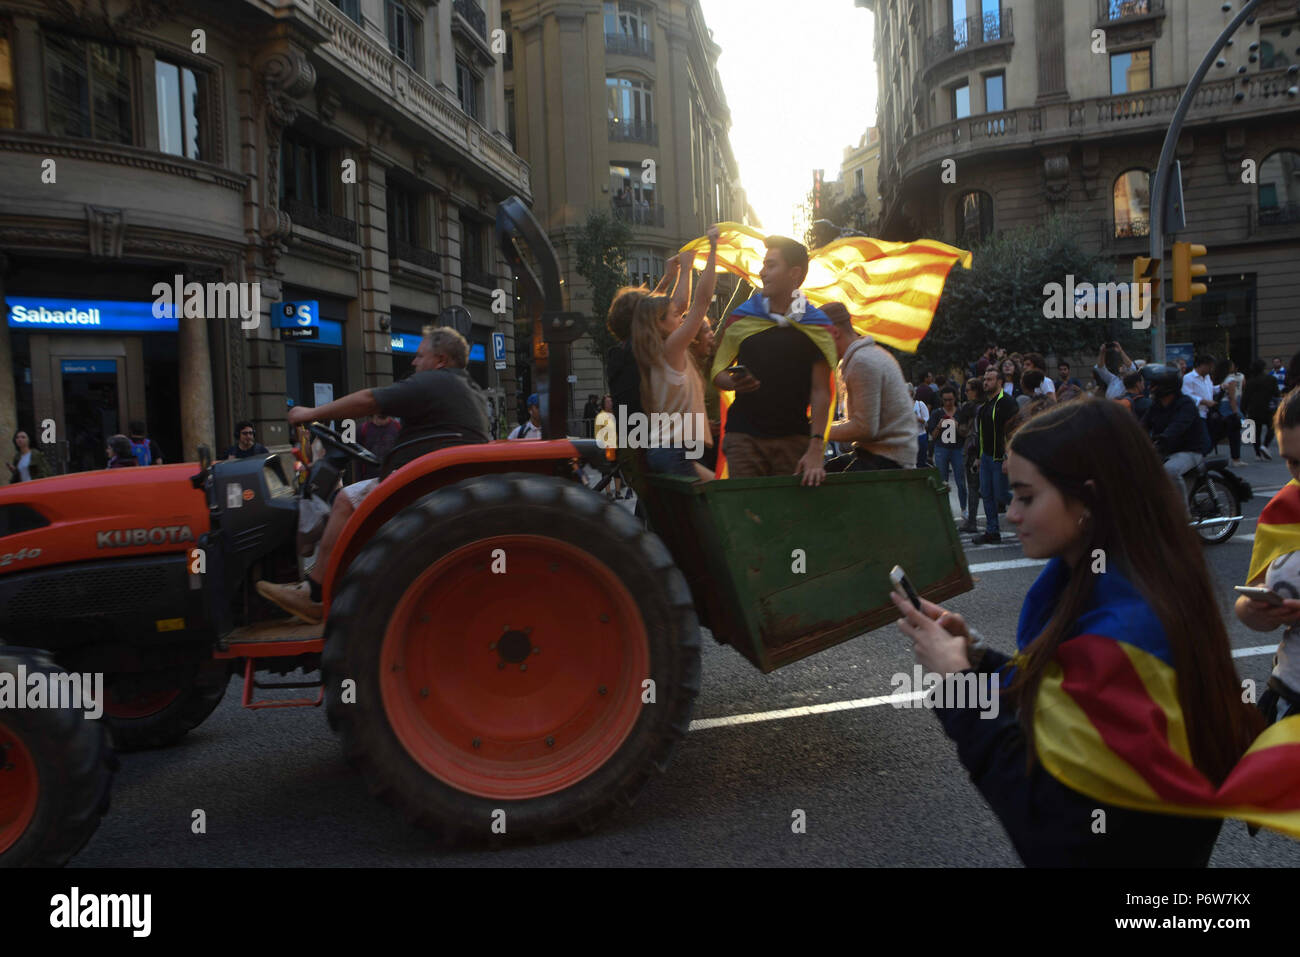 Ottobre 27, 2017 - Barcellona, Spagna: catalani celebrano nelle strade di Barcellona dopo il catalano il parlamento ha votato a favore della dichiarazione di indipendenza dalla Spagna. Rassemblement festif dans les rues de Barcelone apres la dichiarazione unilaterale d'indipendenza. *** La Francia / NESSUNA VENDITA A MEDIA FRANCESI *** Foto Stock